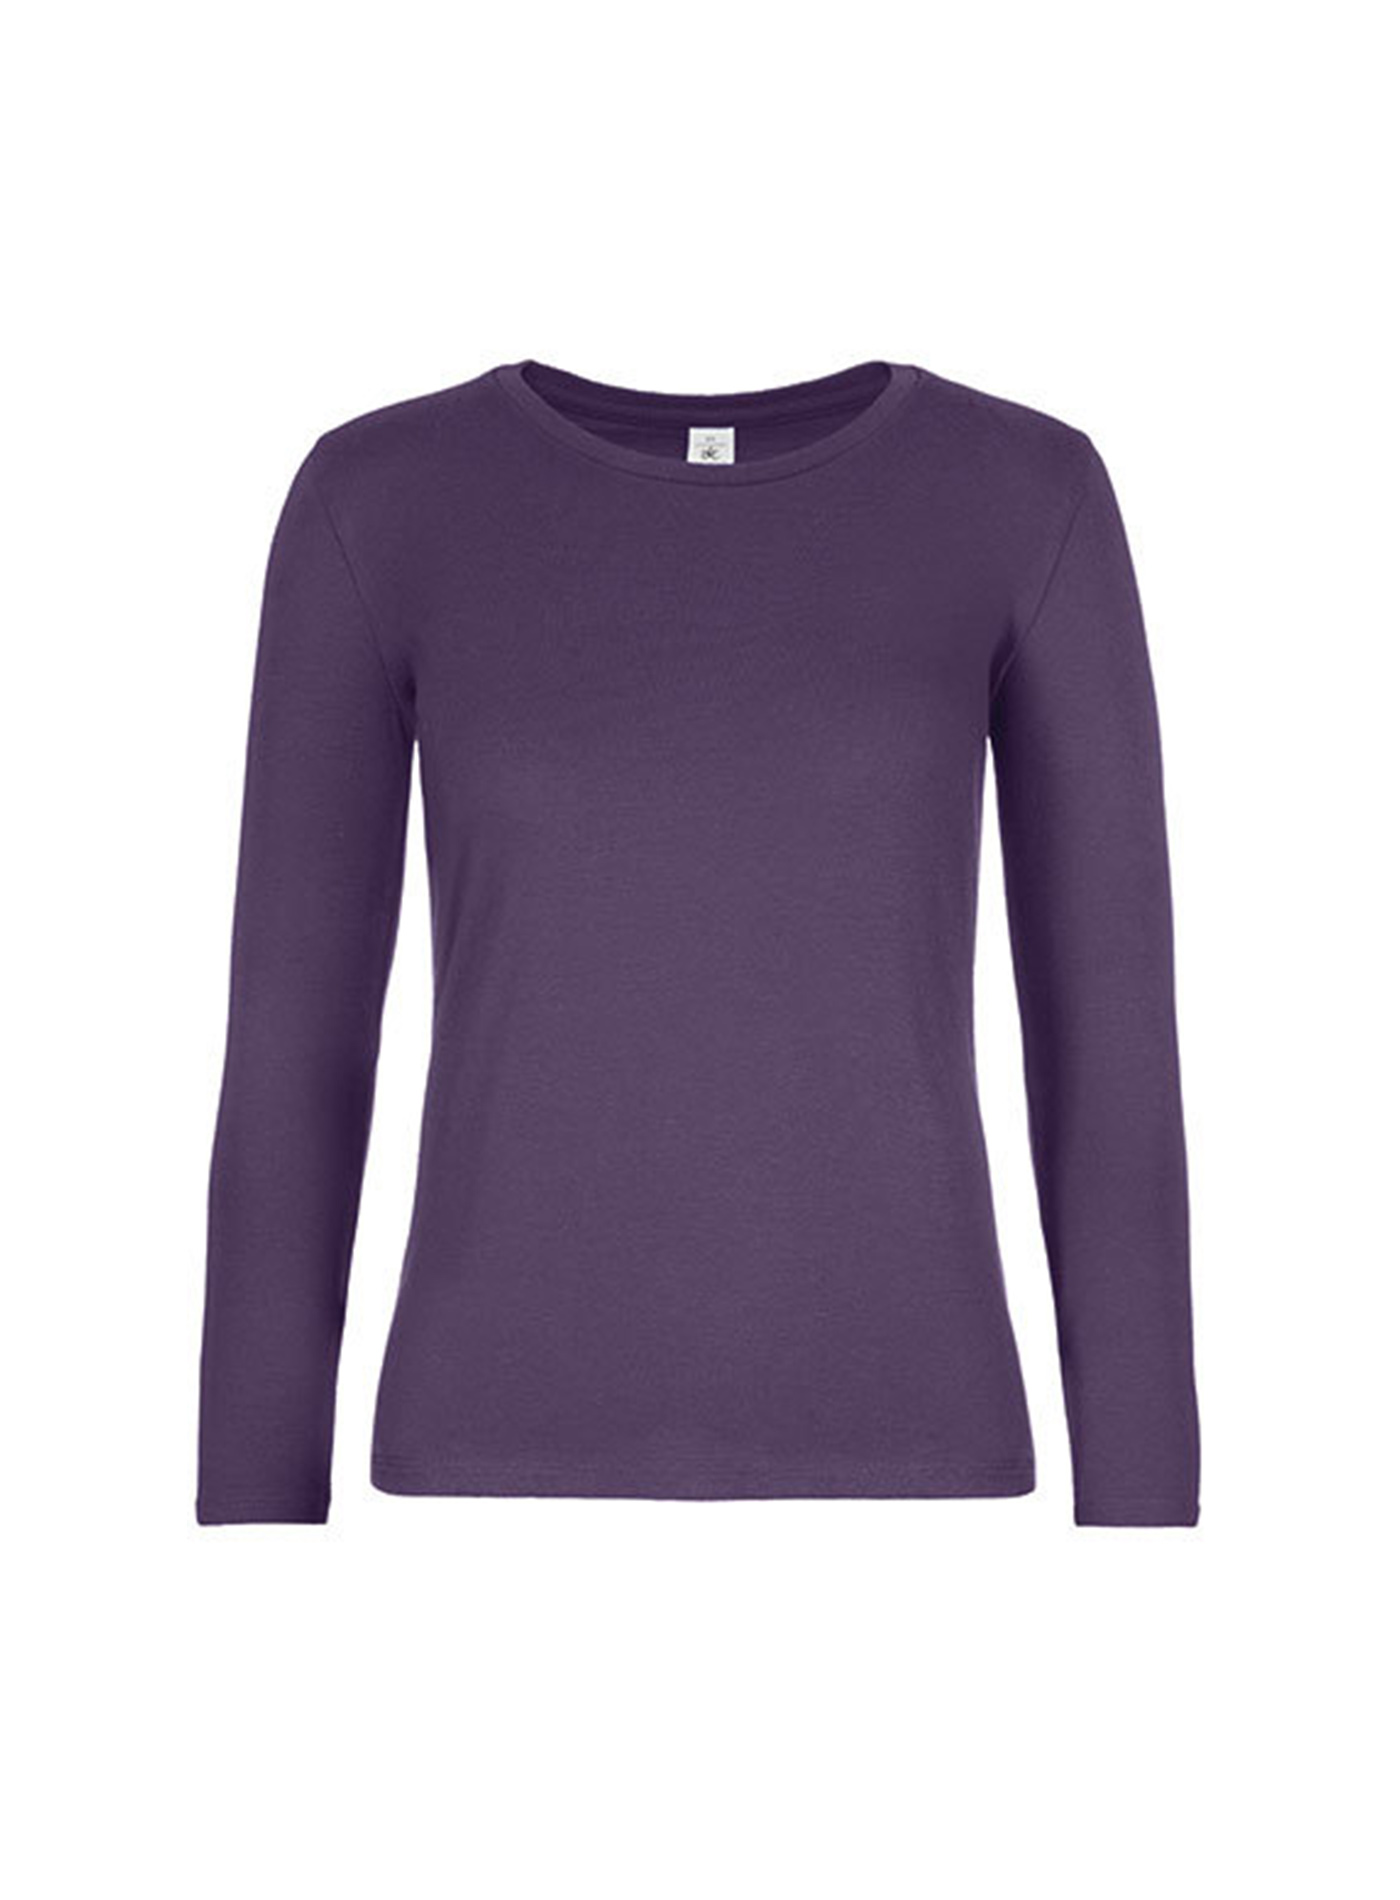 Dámské tričko s dlouhým rukávem B&C Collection - Tmavě fialová XL